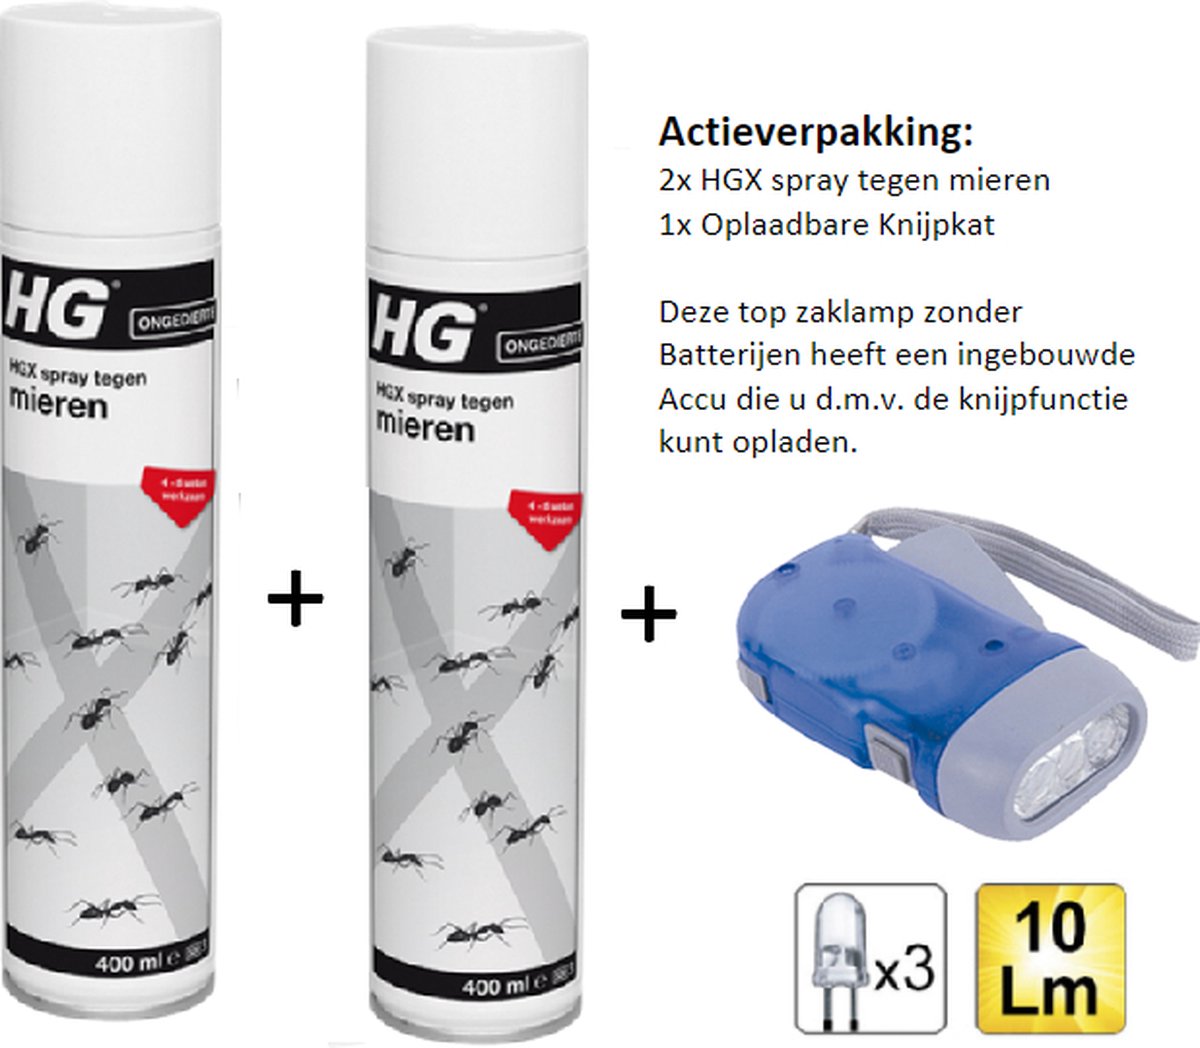 HGX spray tegen mieren - 2 stuks + Zaklamp/Knijpkat